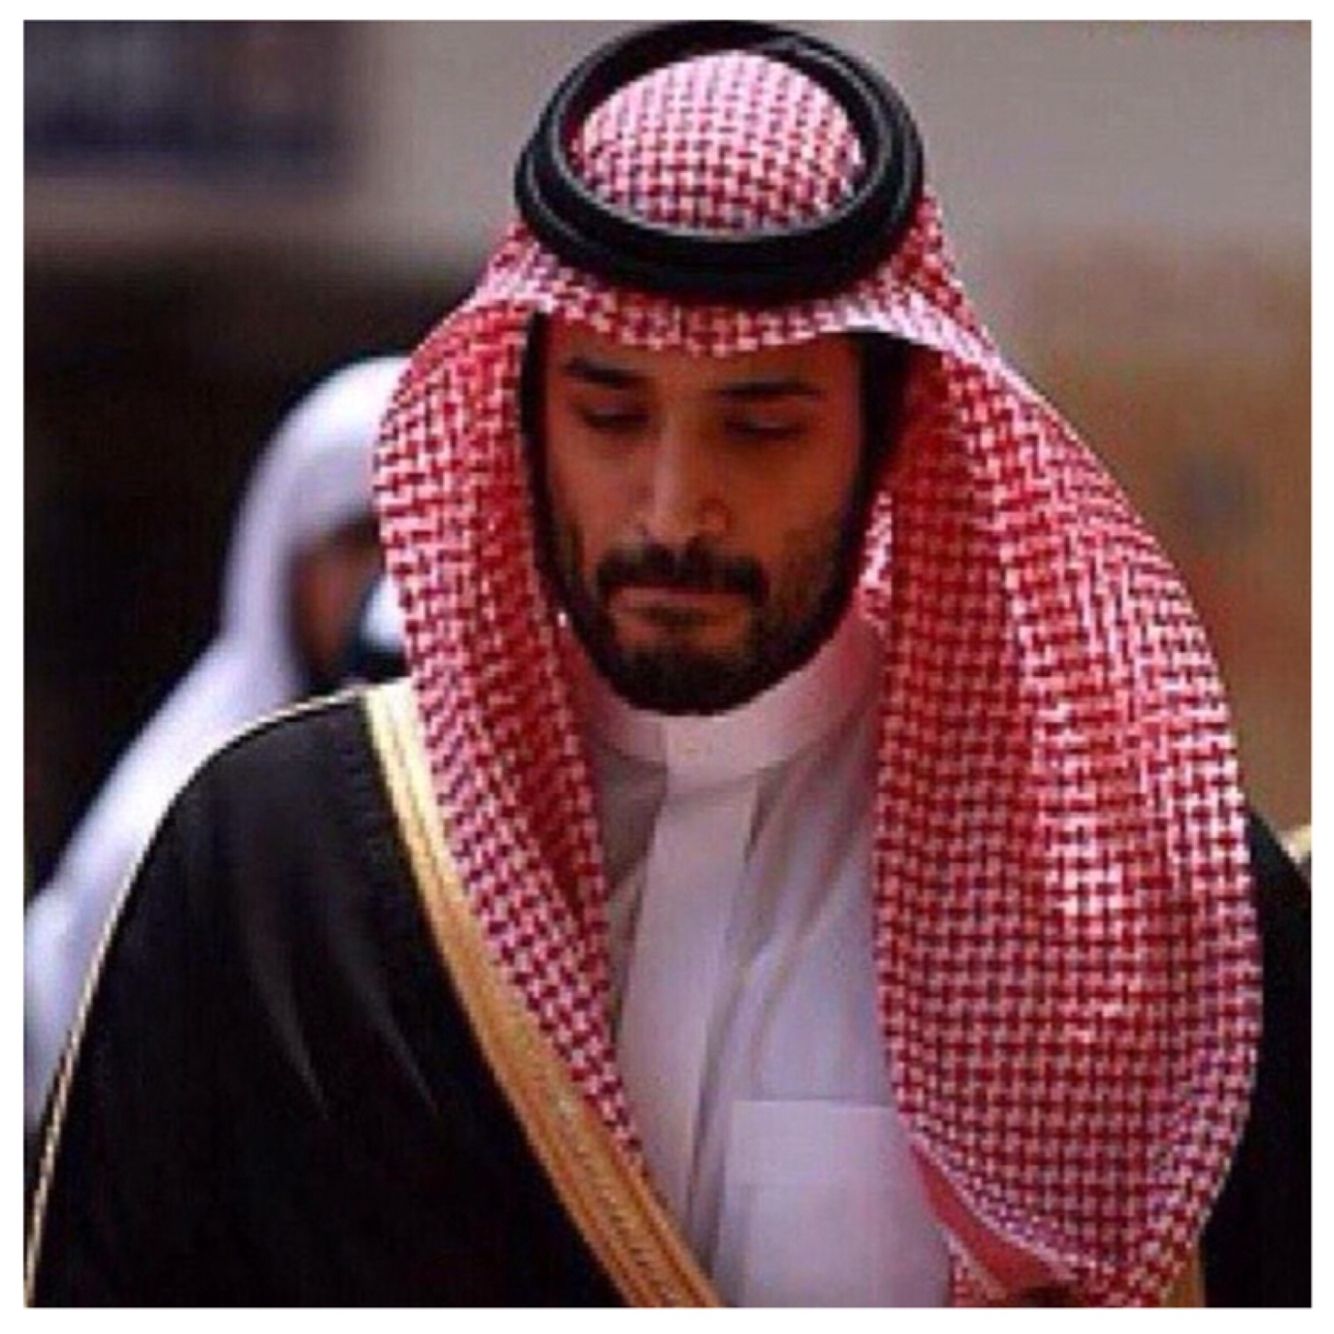 Mohammed bin Salman